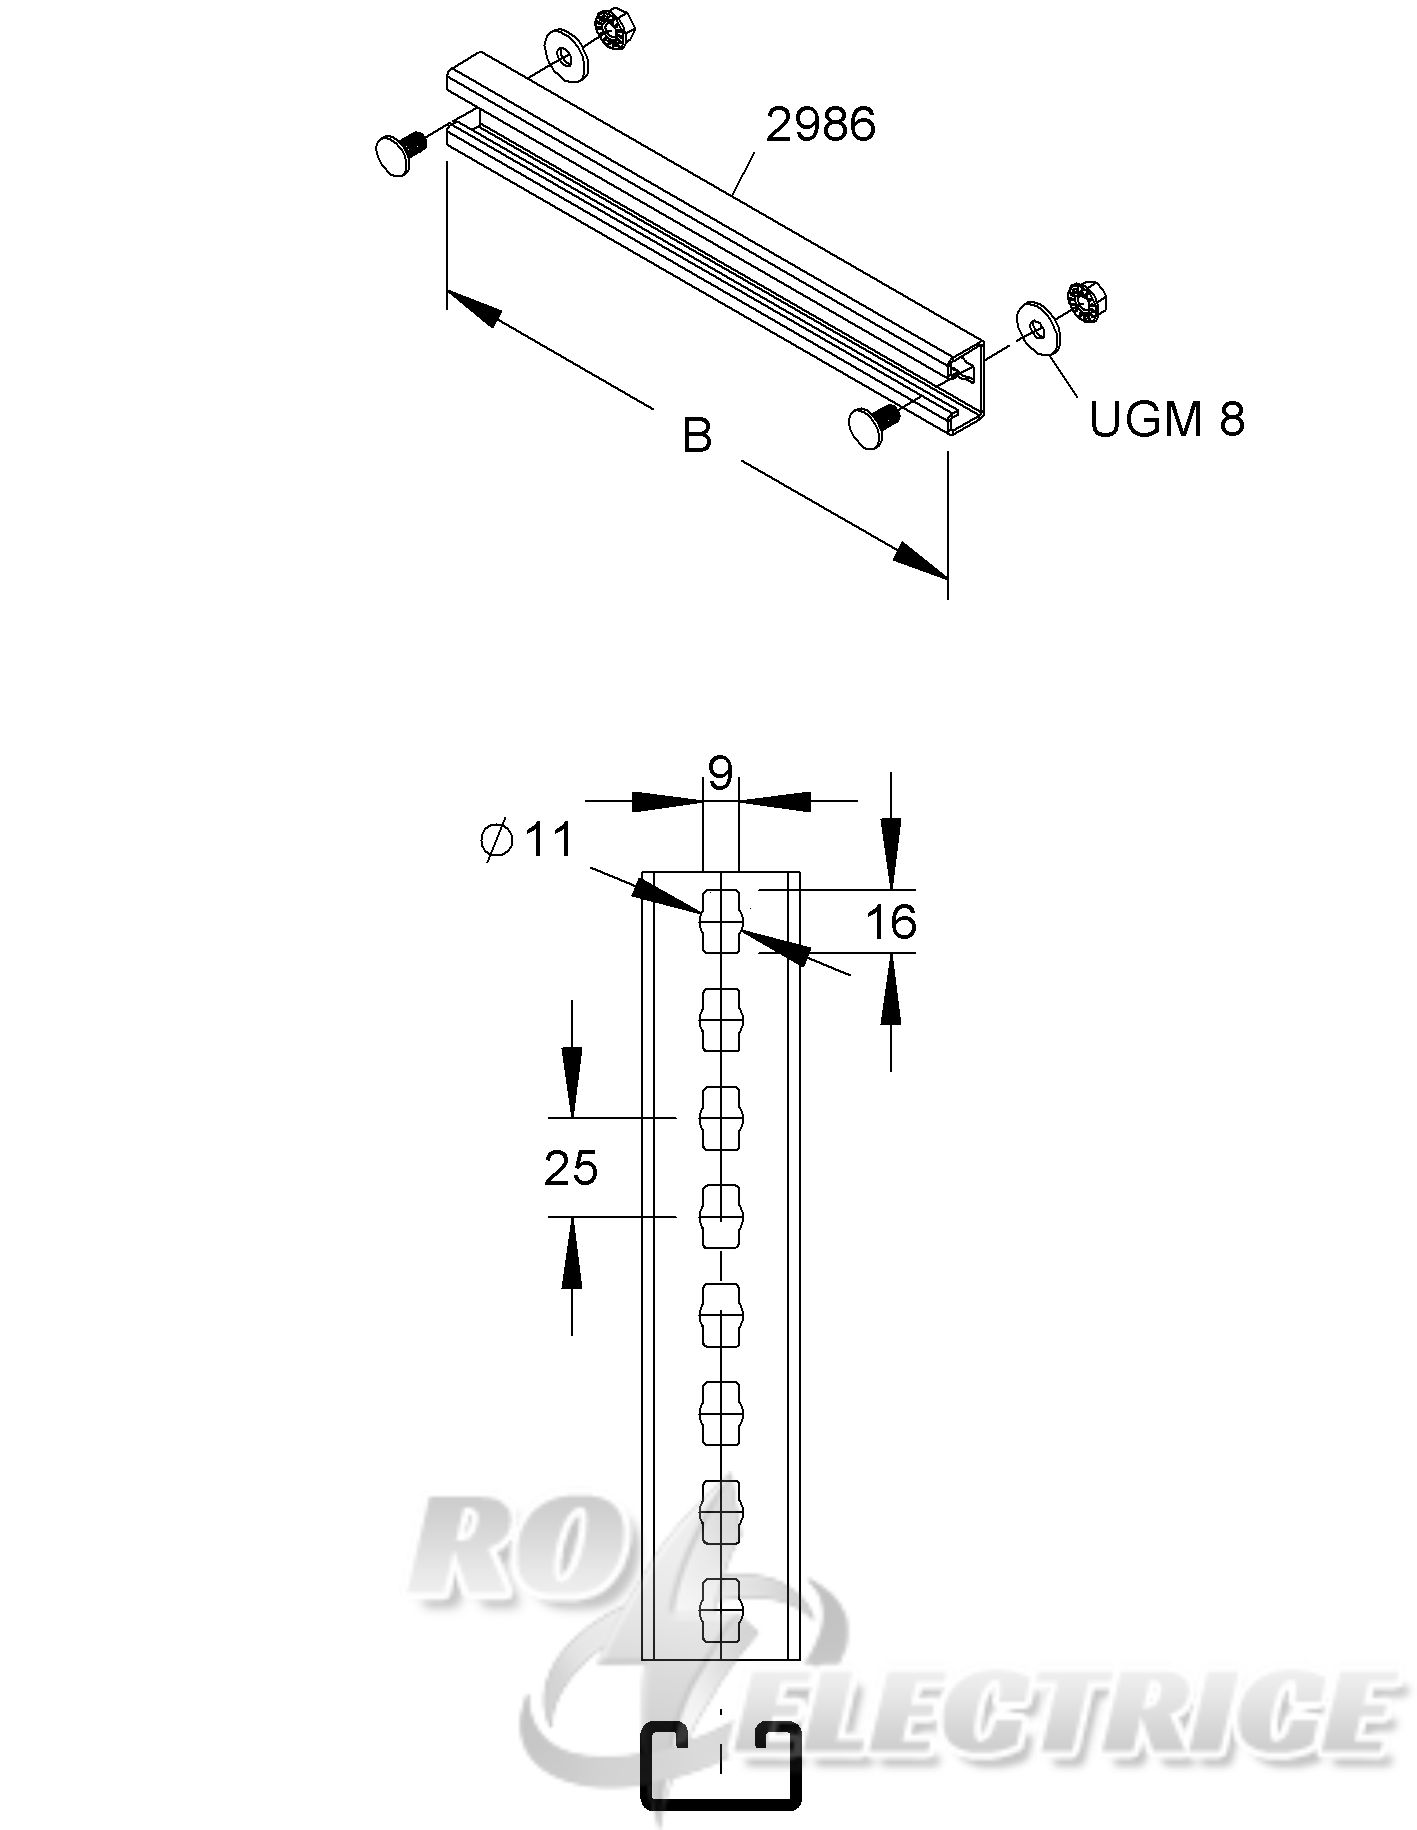 Sprosse für Steigetrassen, 40x22x2 mm, B=200 mm, 1,75 kN, Stahl, feuerverzinkt DIN EN ISO 1461, inkl. Zubehör